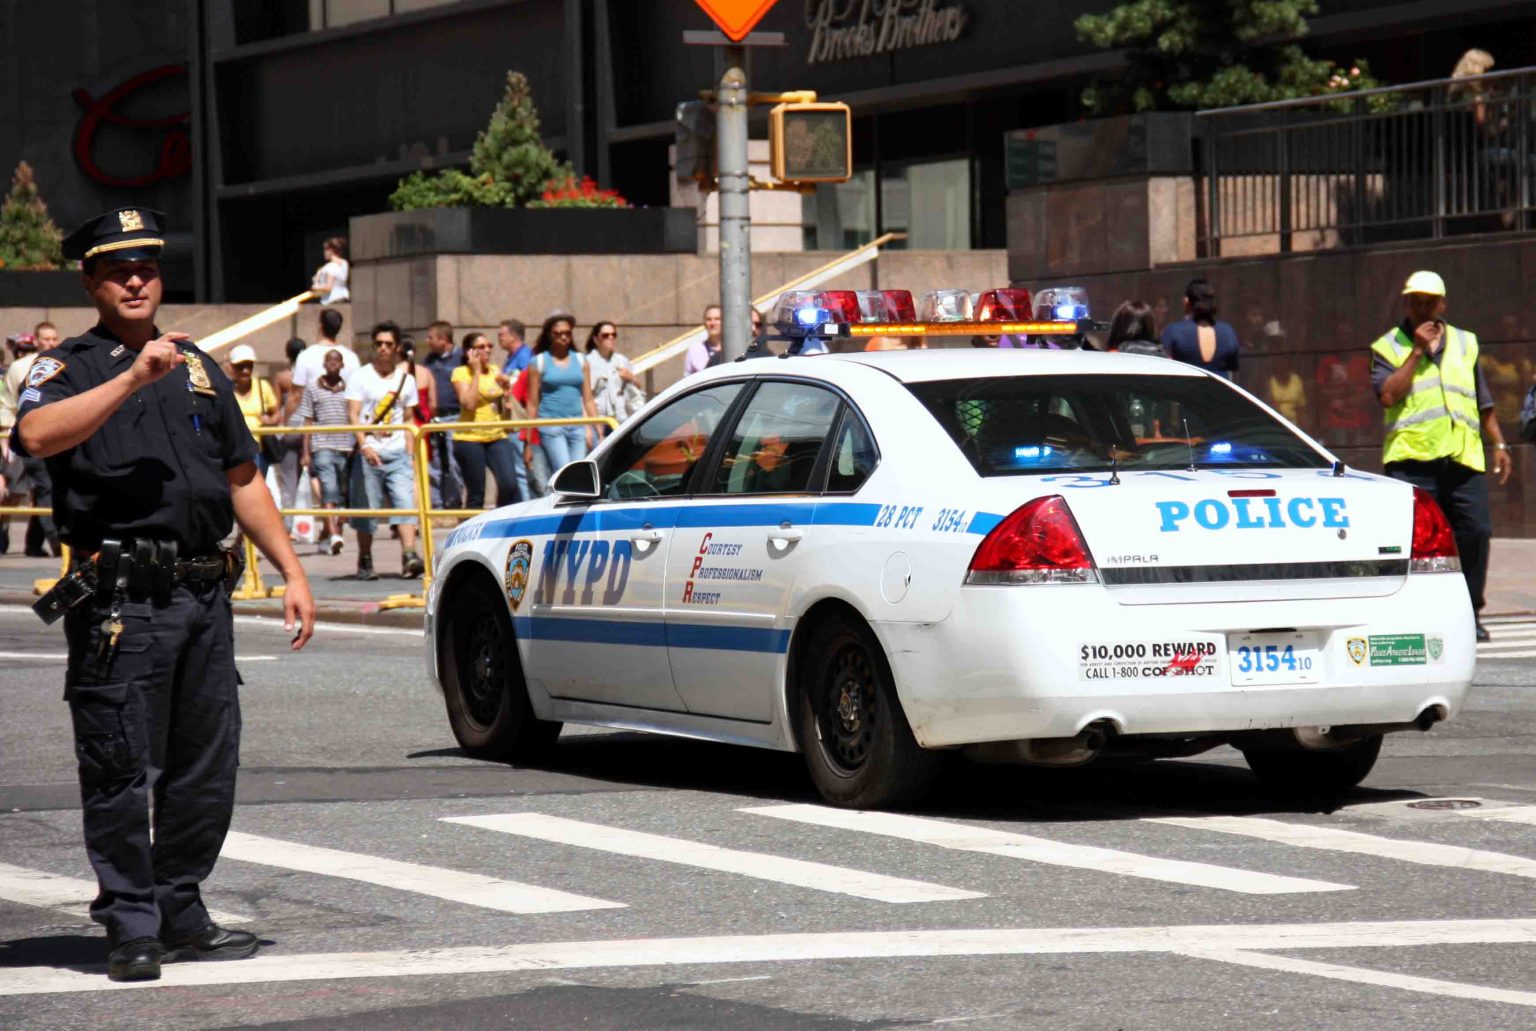 Policia alto manhattan new york